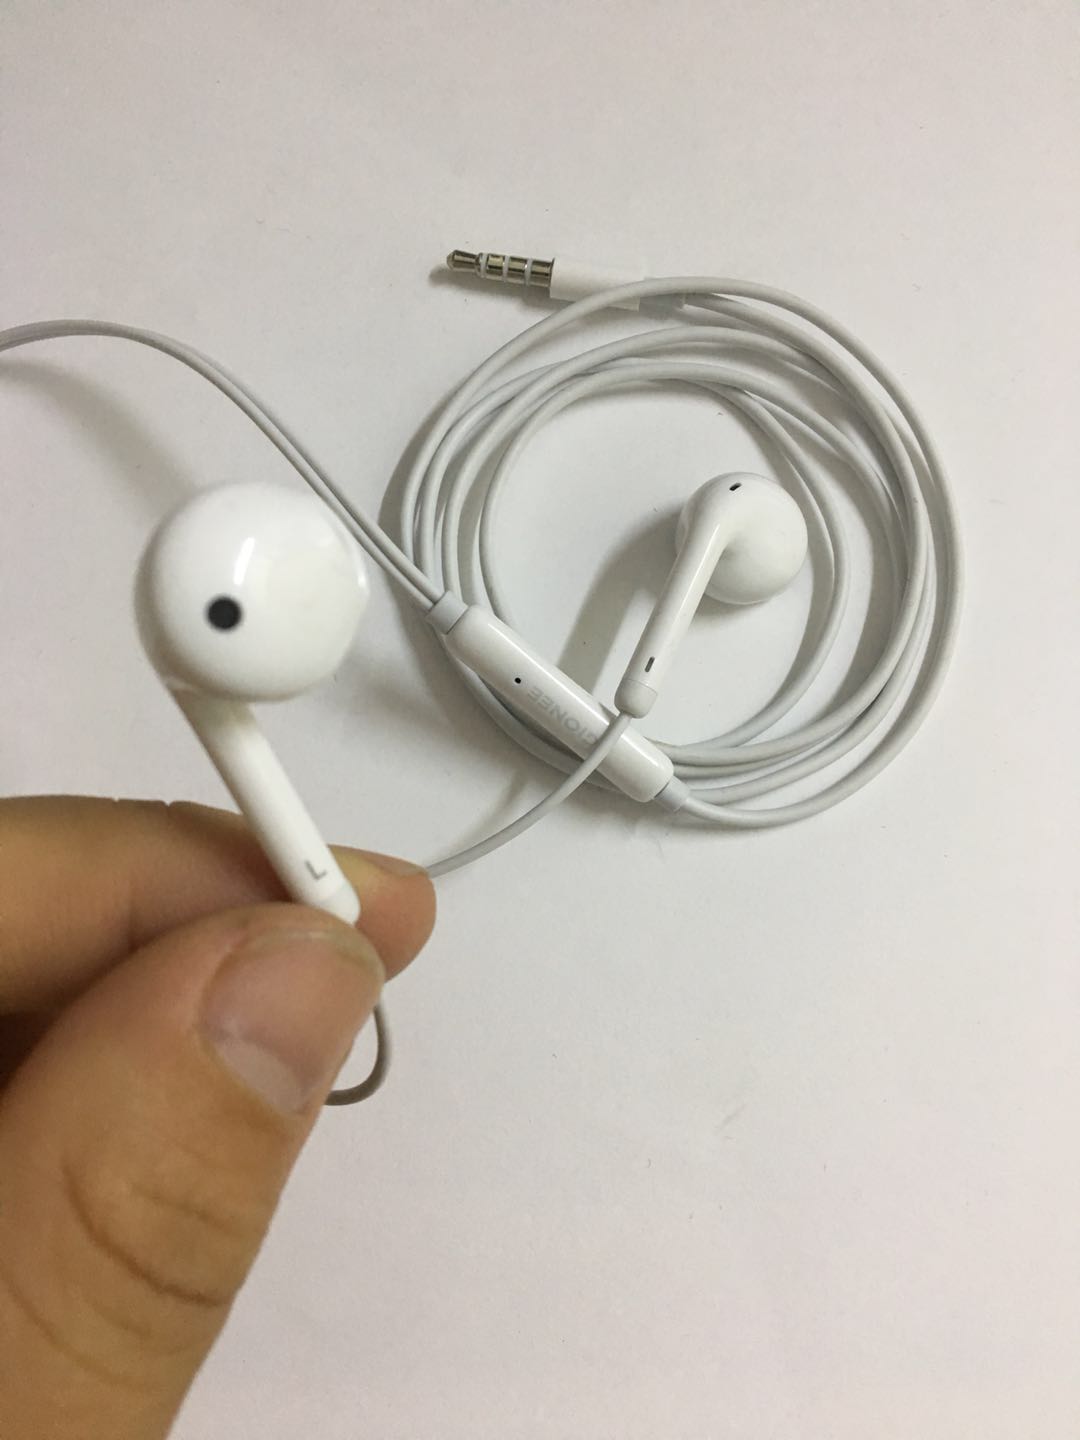 华为苹果通用耳机iphone6/7plus/7p/6s蘋果手机耳机入耳式原裝正品图片